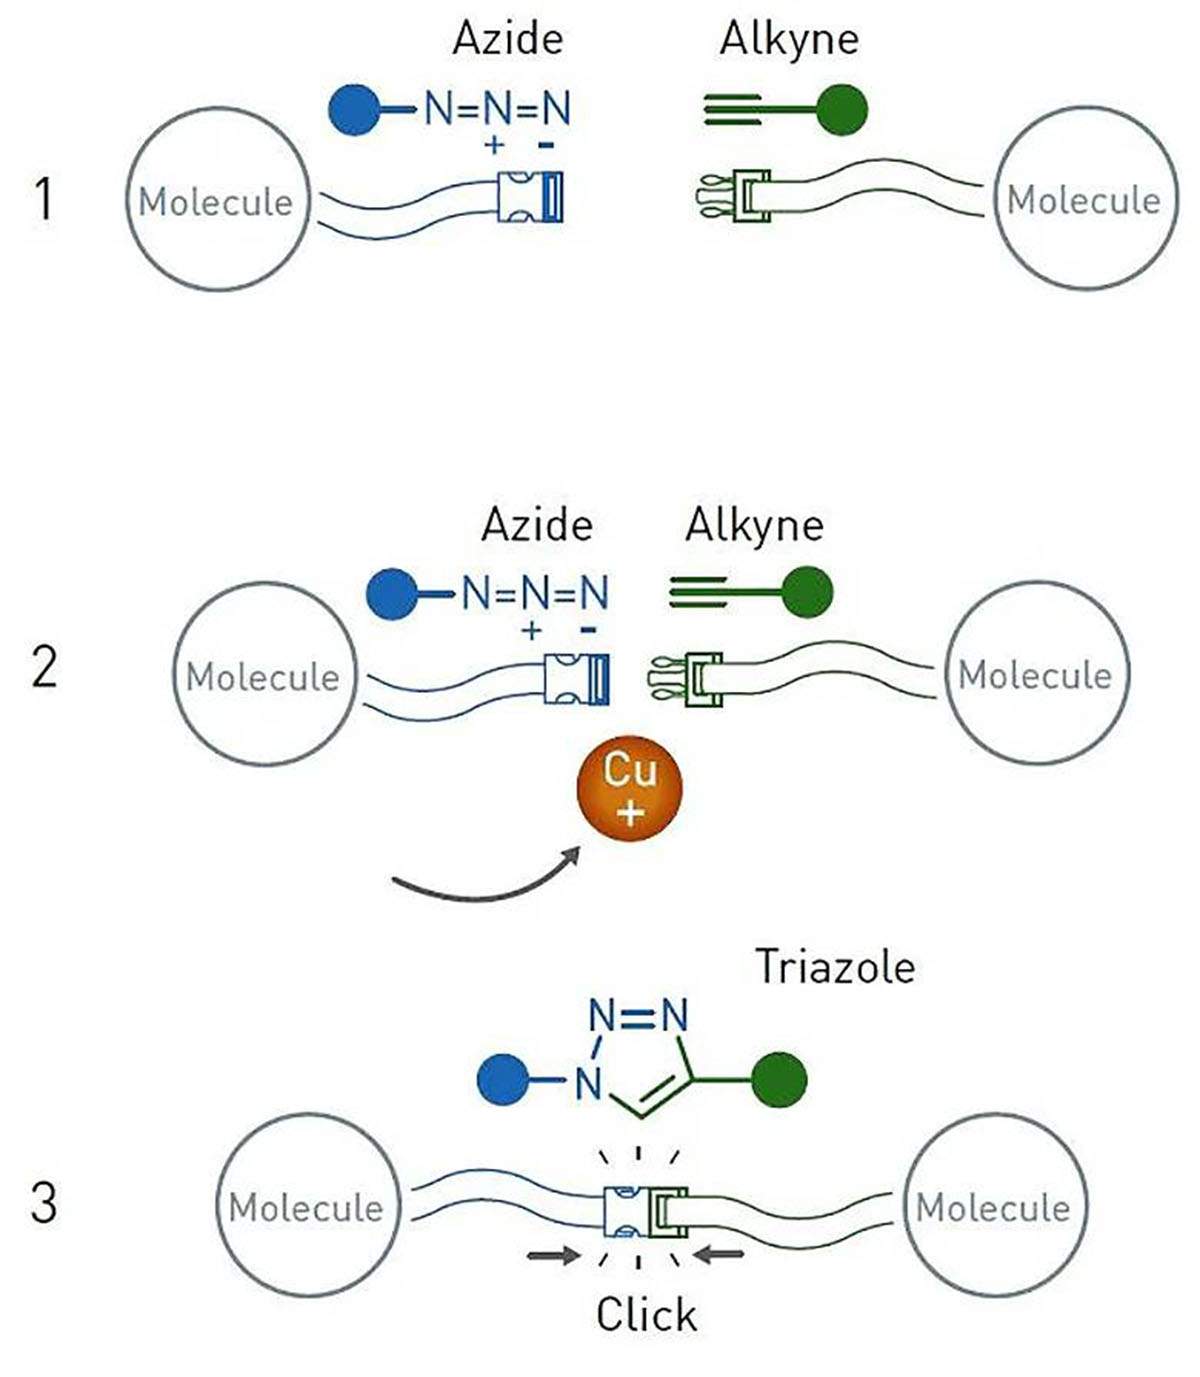 La química del clic o la cicloadición de azidas a alcalinos catalizada por cobre / Imagen: Nobel Prize